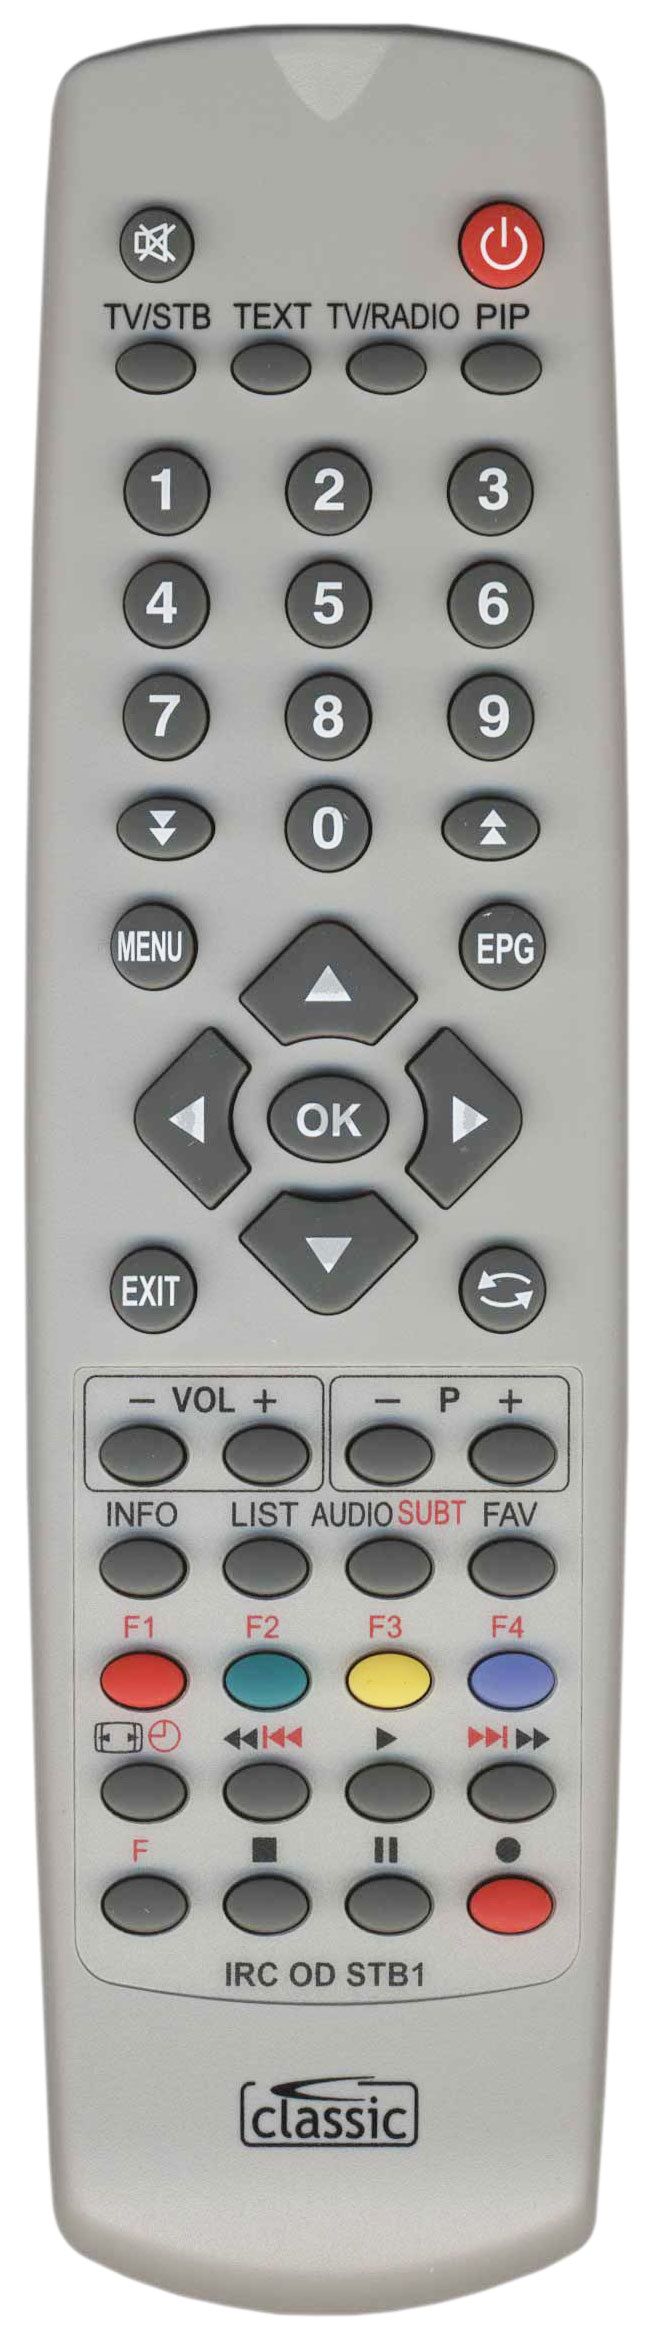 TECHNOMATE TM500TM600 Remote Control